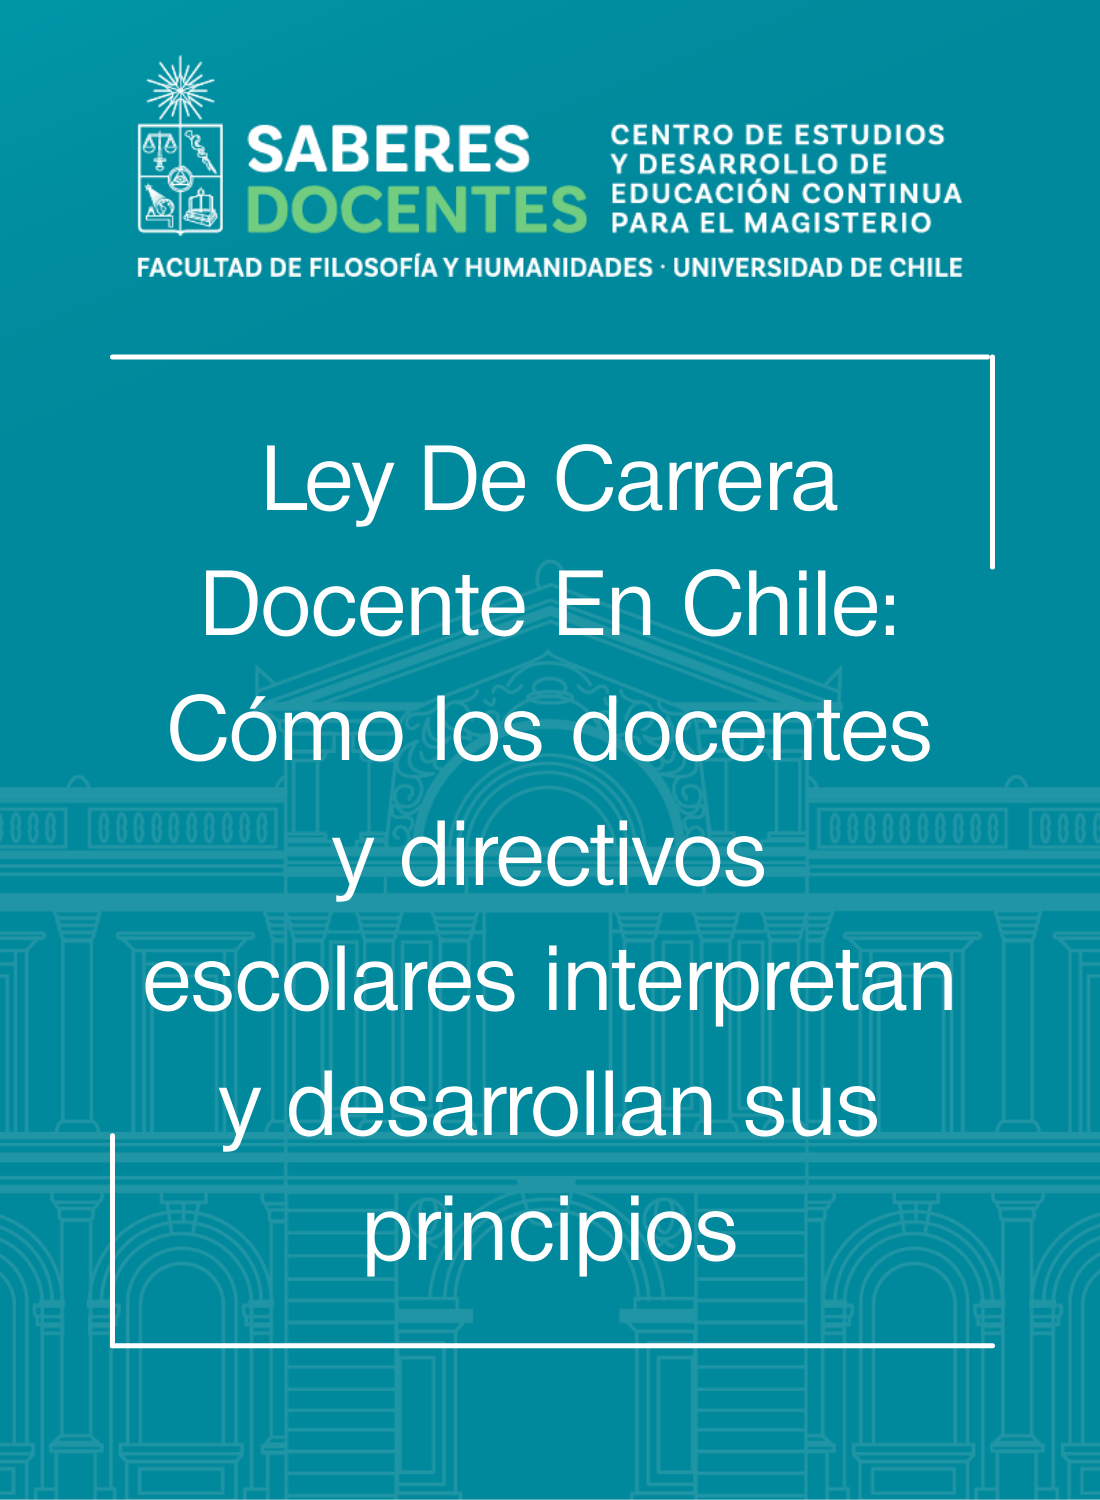 Ley De Carrera Docente En Chile: Cómo los docentes y directivos escolares  interpretan y desarrollan sus principios. - SABERES DOCENTES - Centro de  Estudios y Desarrollo de Educación Continua para el Magisterio